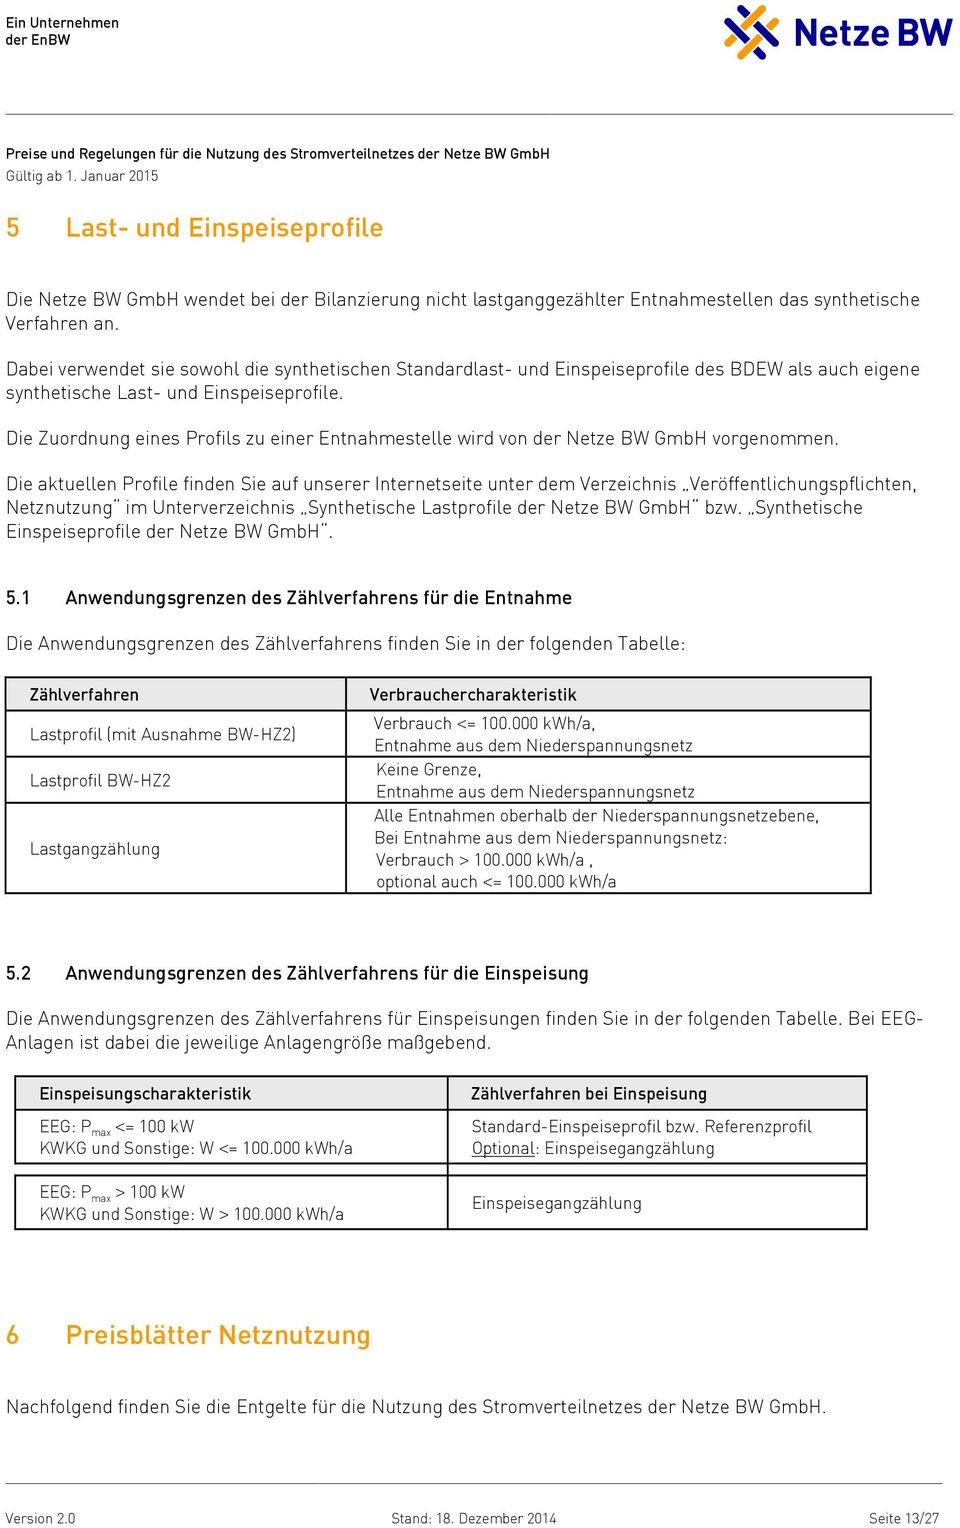 Die Zuordnung eines Profils zu einer Entnahmestelle wird von der Netze BW GmbH vorgenommen.